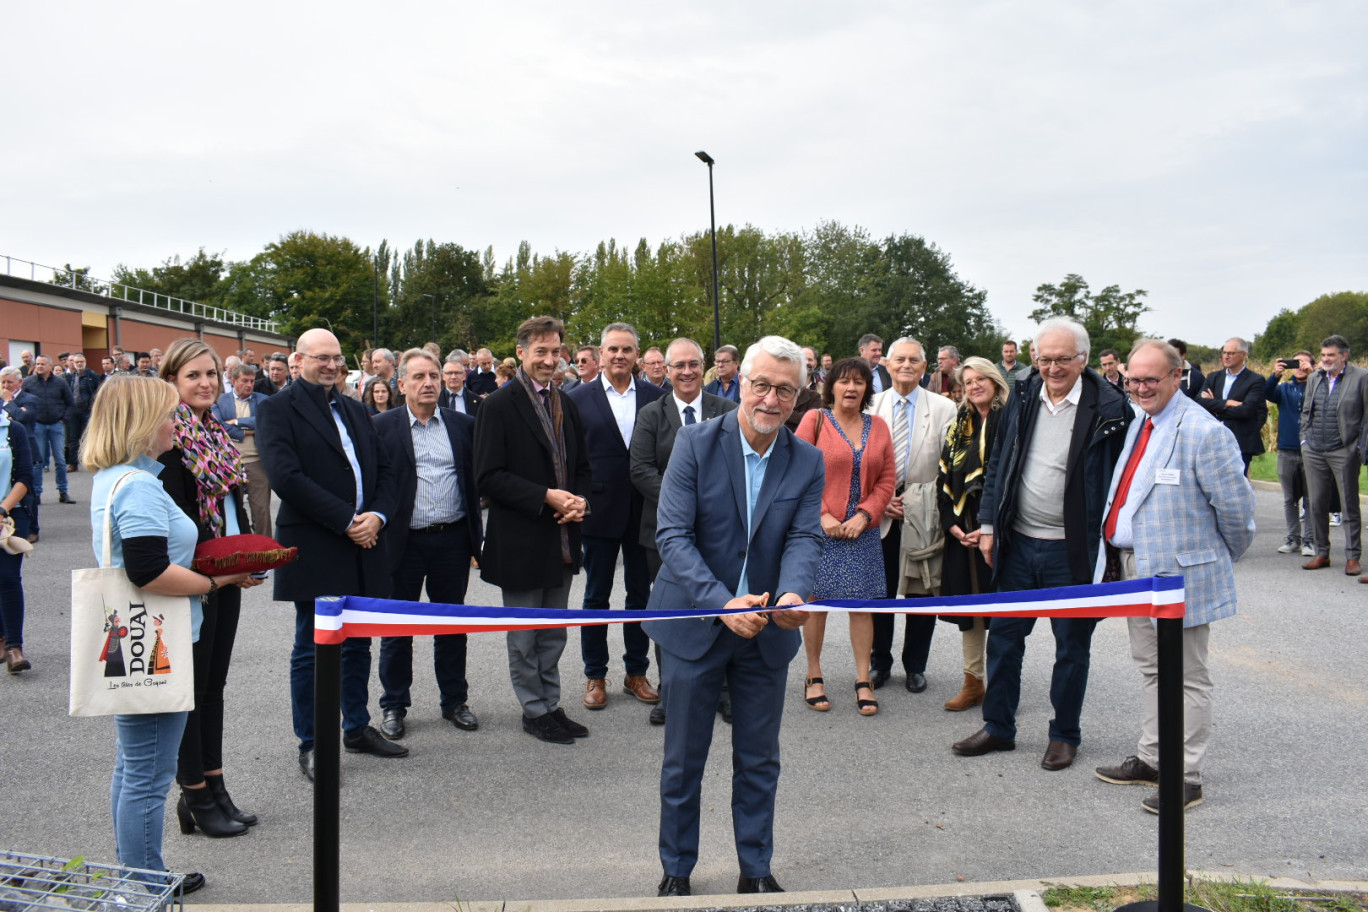 Jean-Jacques Hérin, président d’Adopta, inaugure le nouveau showroom des solutions et aménagements de gestion durable et intégrée des eaux pluviales de l’association au sein du lycée Biotech de Douai.